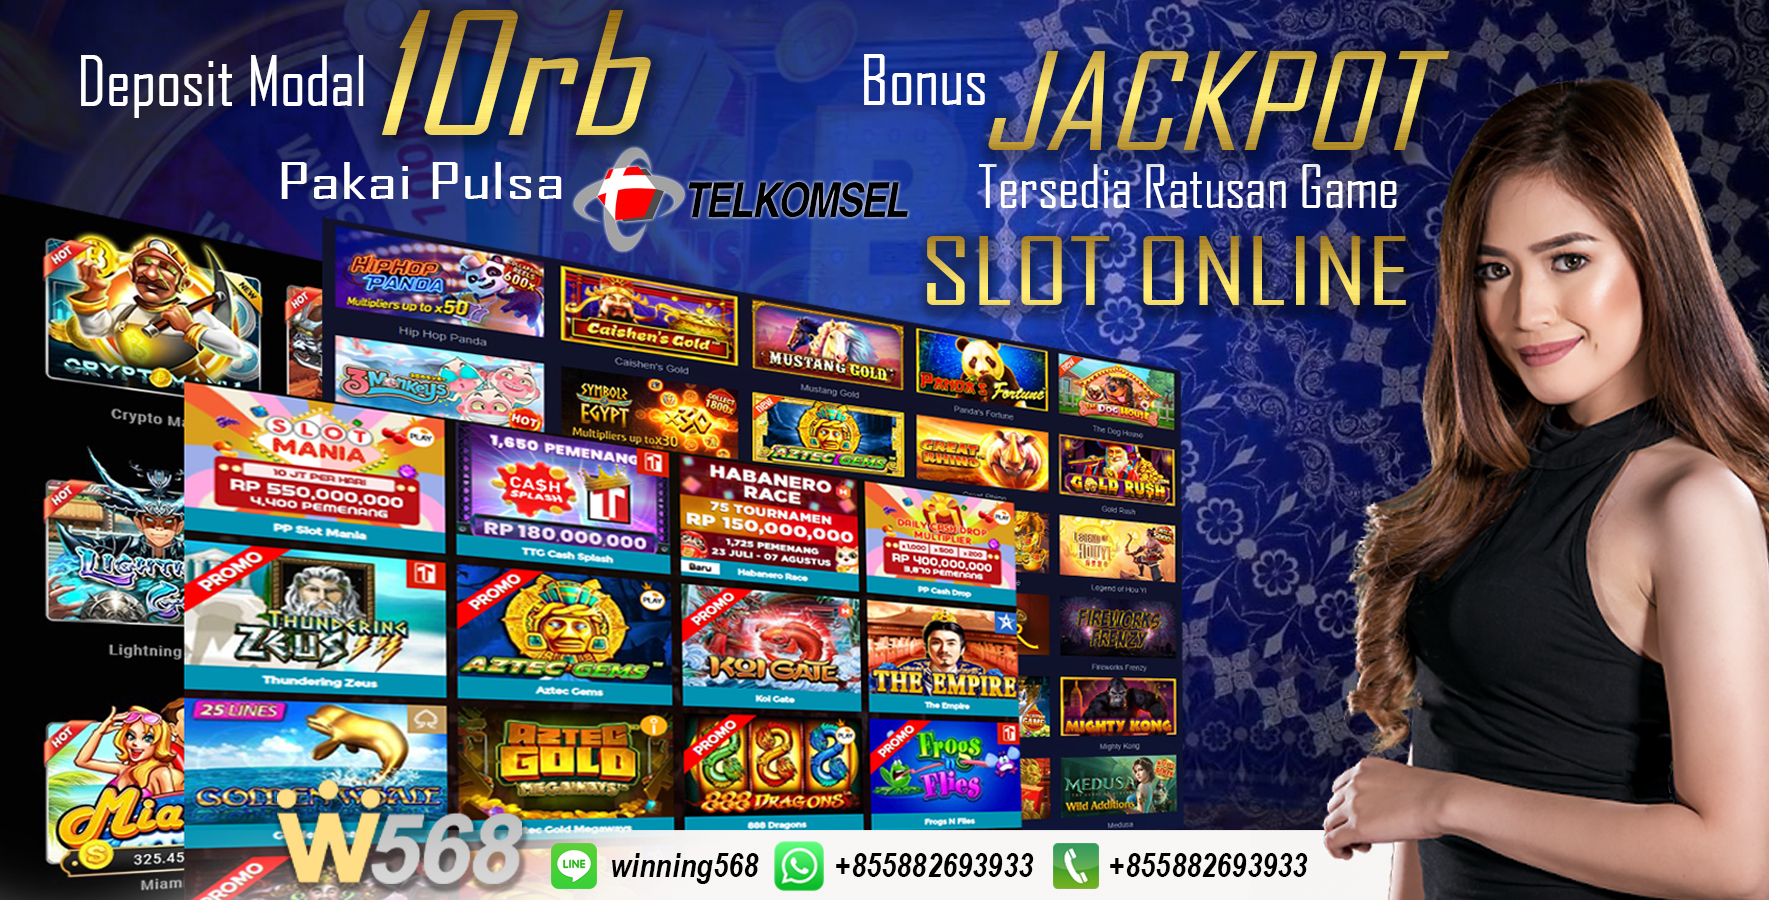 Situs Game Slot Online Terpercaya Indonesia 2020 ~ Winning568 - Situs Judi Online dan Slot ...